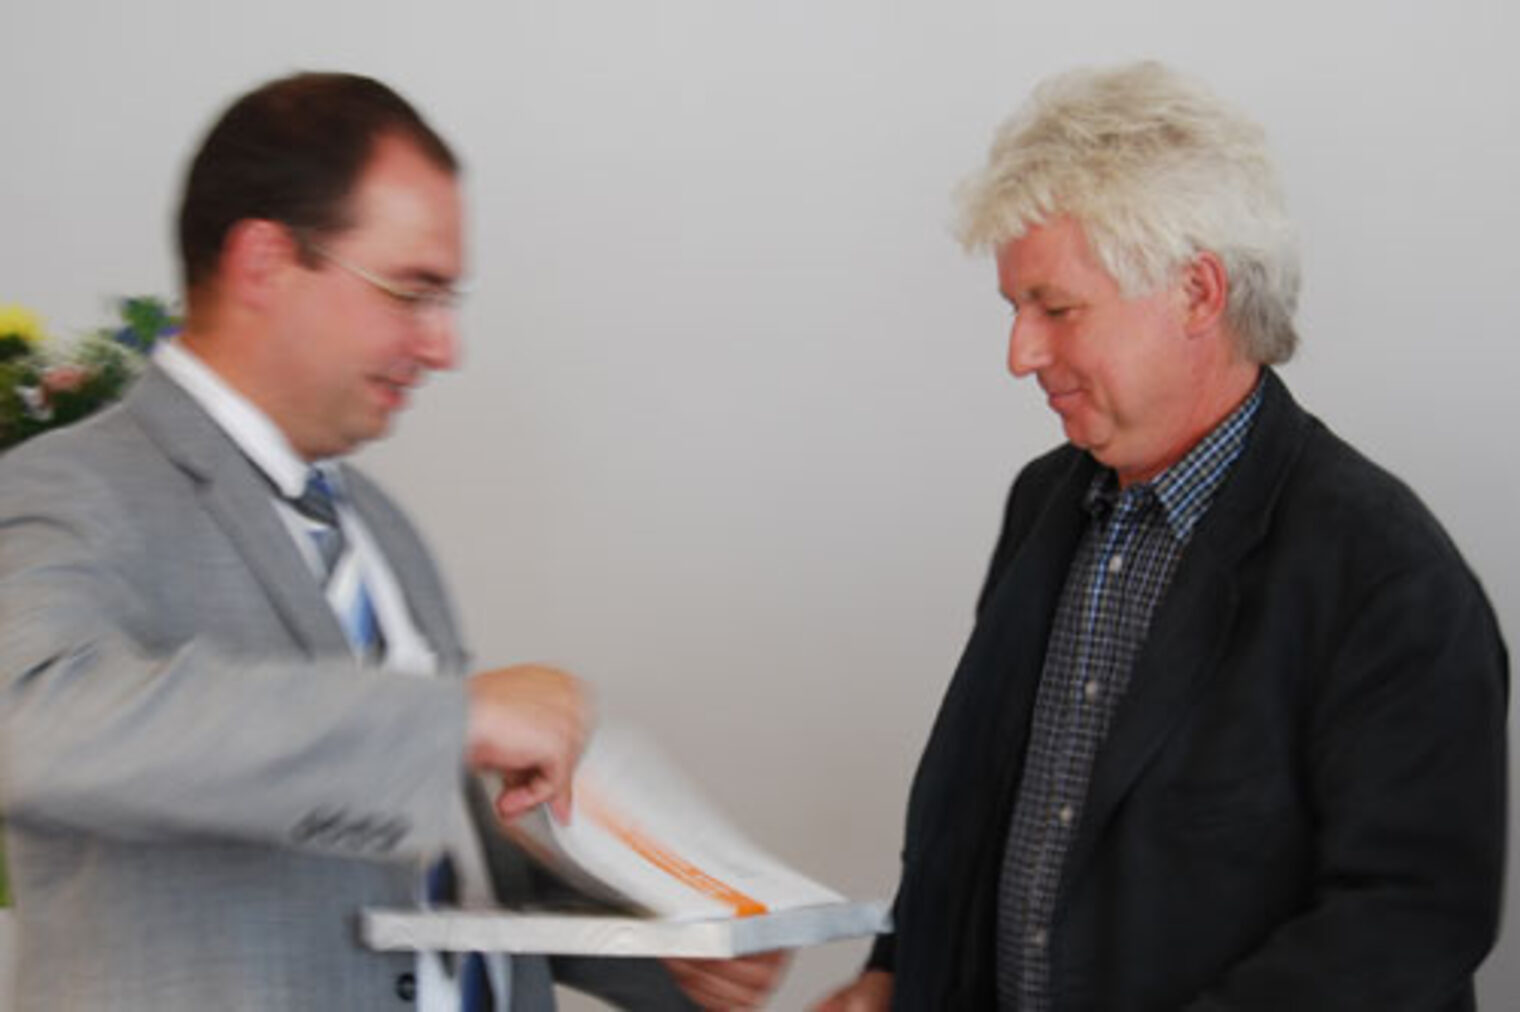 Auszeichnungsveranstaltung "Bewährter Ausbildungsbetrieb" 2009 (Matthias Forßbohm zeichnet die HWE-Elektrobau GmbH als bewährten Ausbildungsbetrieb aus. Firmenvertreter Herr Wieprich nahm die Urkunde entgegen.) 